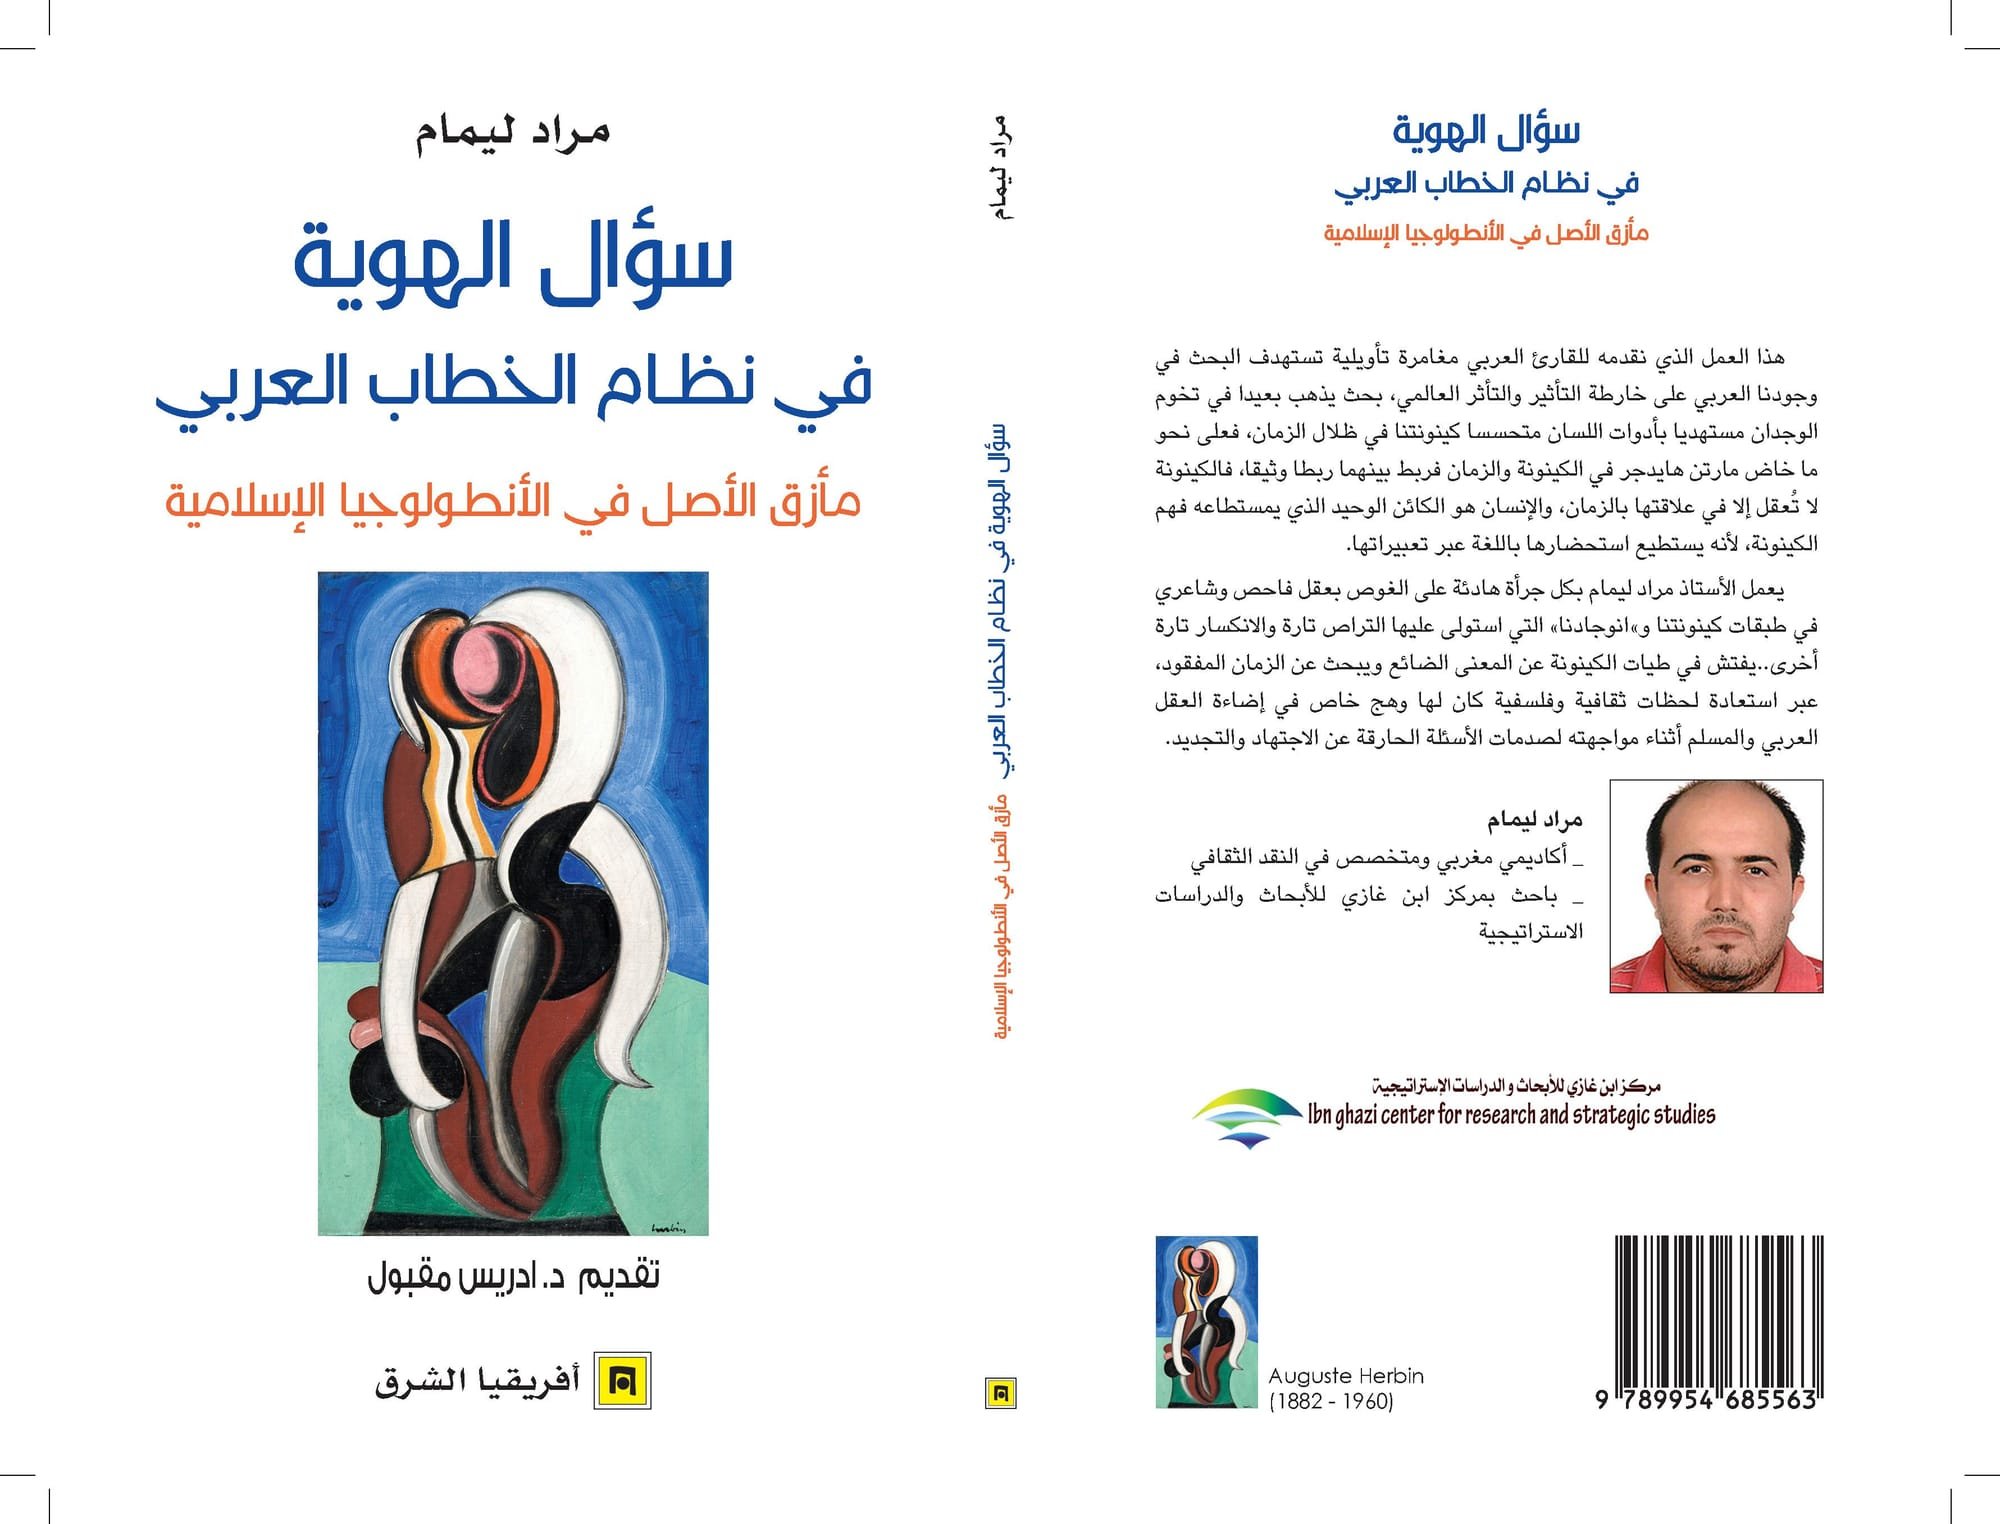 سؤال الهوية في نظام الخطاب العربي، مأزق الأصل في الأنطولوجيا الإسلامية(مراد ليمام)